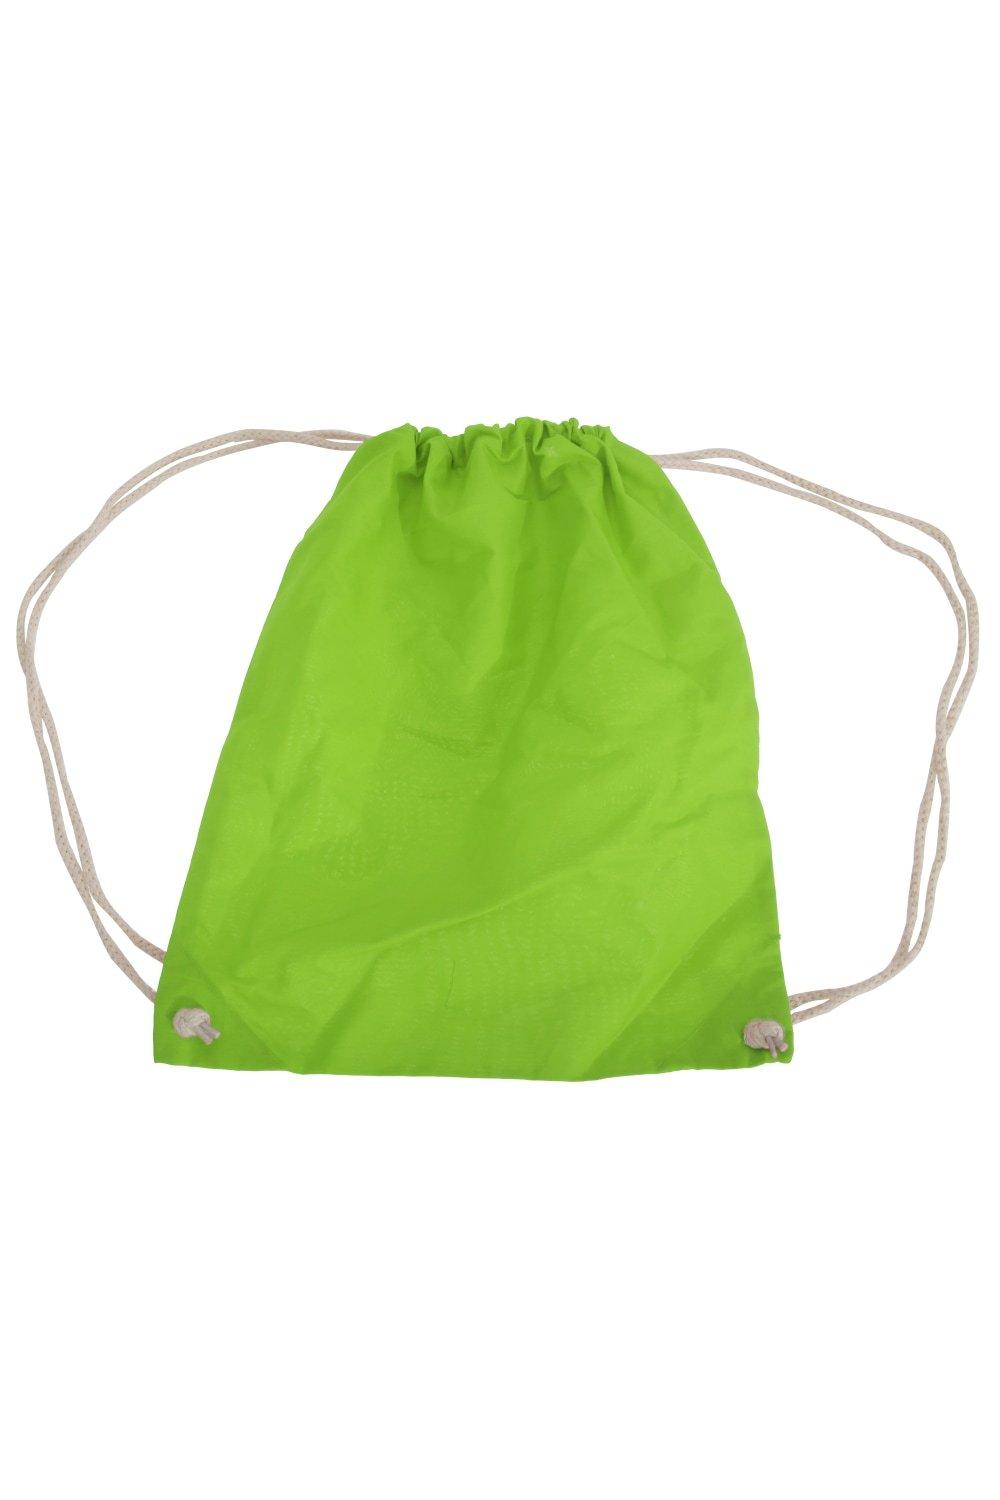 цена Хлопковая сумка Gymsac - 12 литров (2 шт. в упаковке) Westford Mill, зеленый